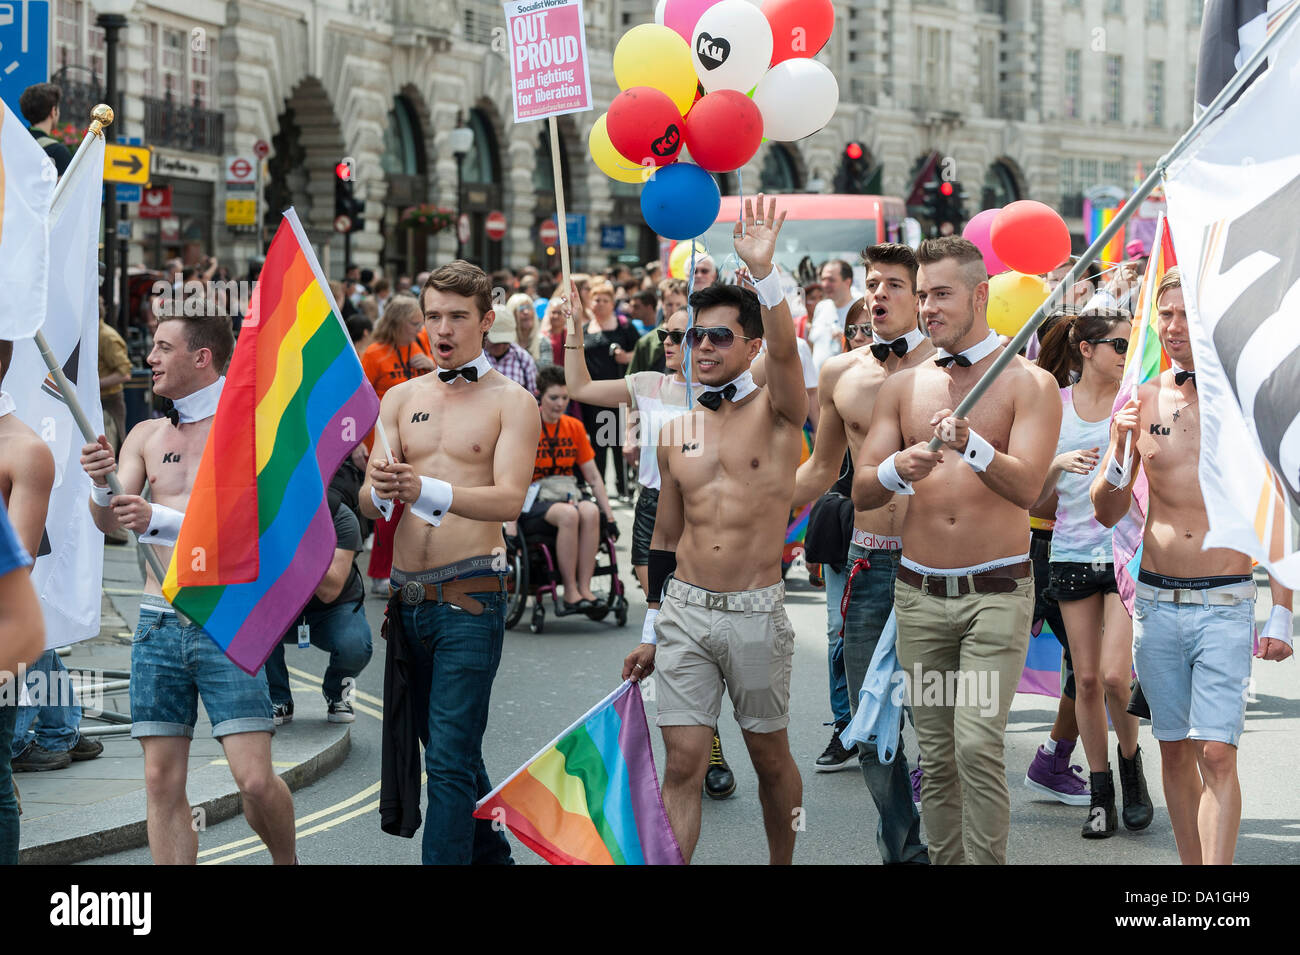 ہانگ کانگ ہم جنس پرستوں کی ڈیٹنگ ایپس۔